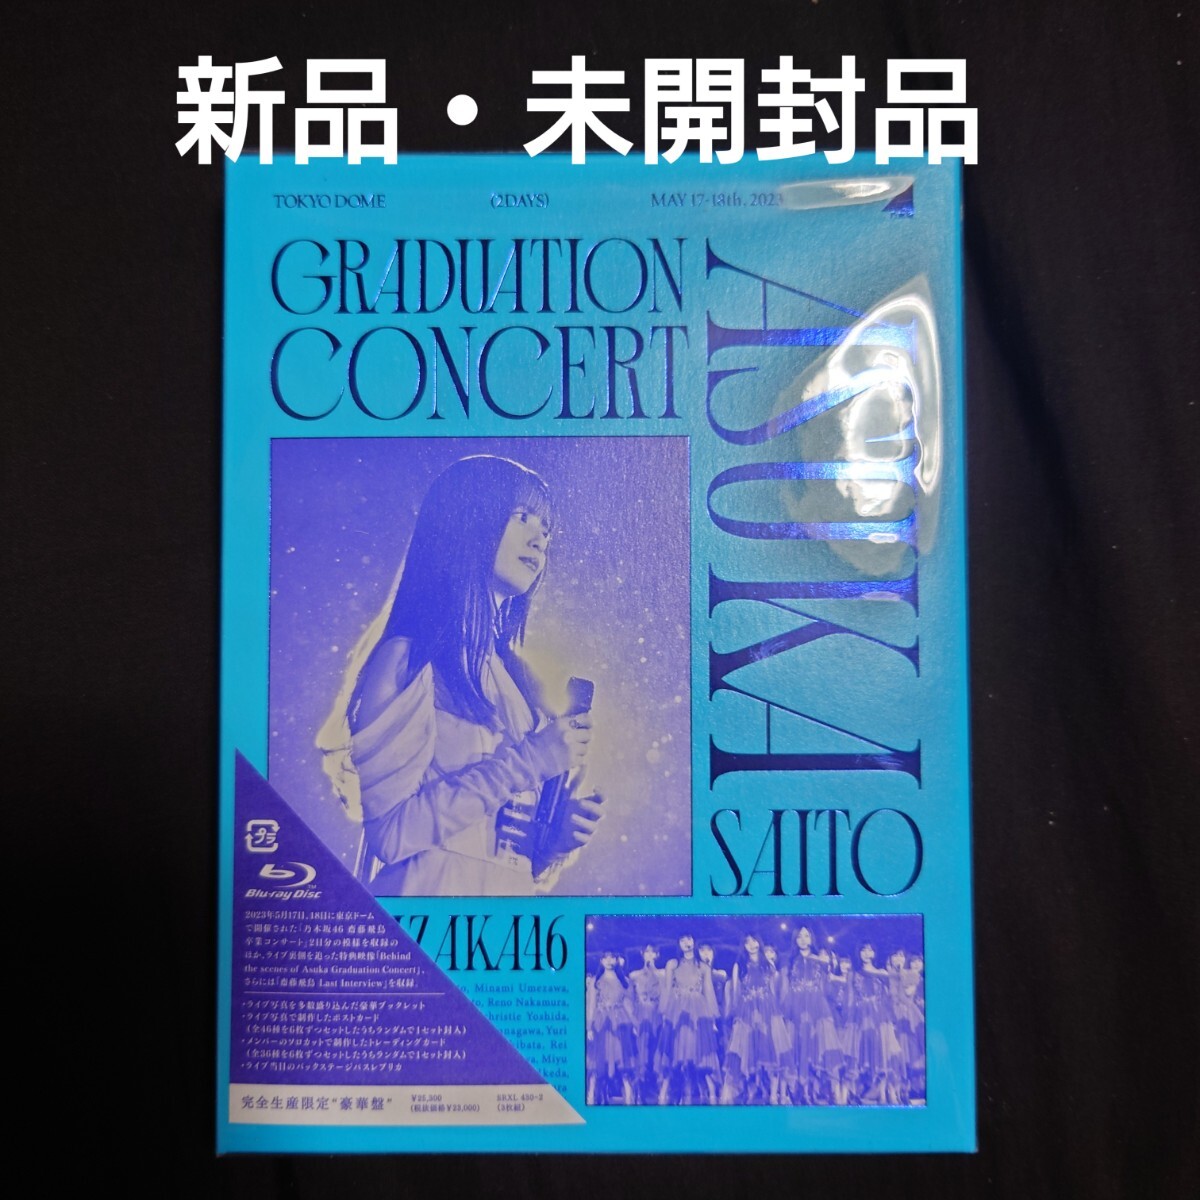 乃木坂46/NOGIZAKA46 ASUKA SAITO GRADUATION CONCERT〈完全生産限定盤・3枚組〉の画像1